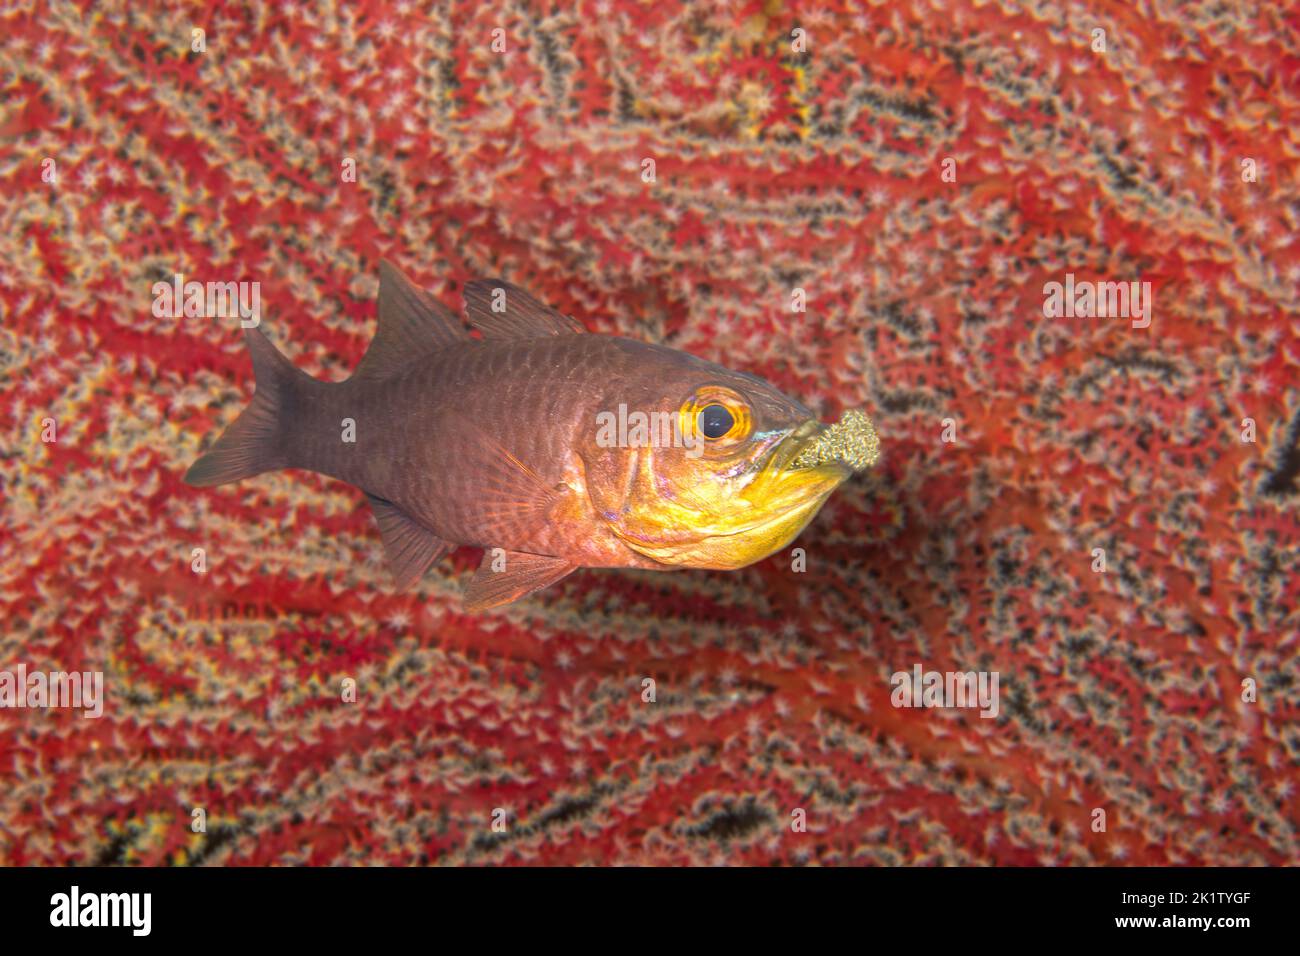 Este cardinalfish macho llano, Ostorhinchus apogonoides, protege e incuba sus huevos llevándolos en su boca, Filipinas. Occa Foto de stock